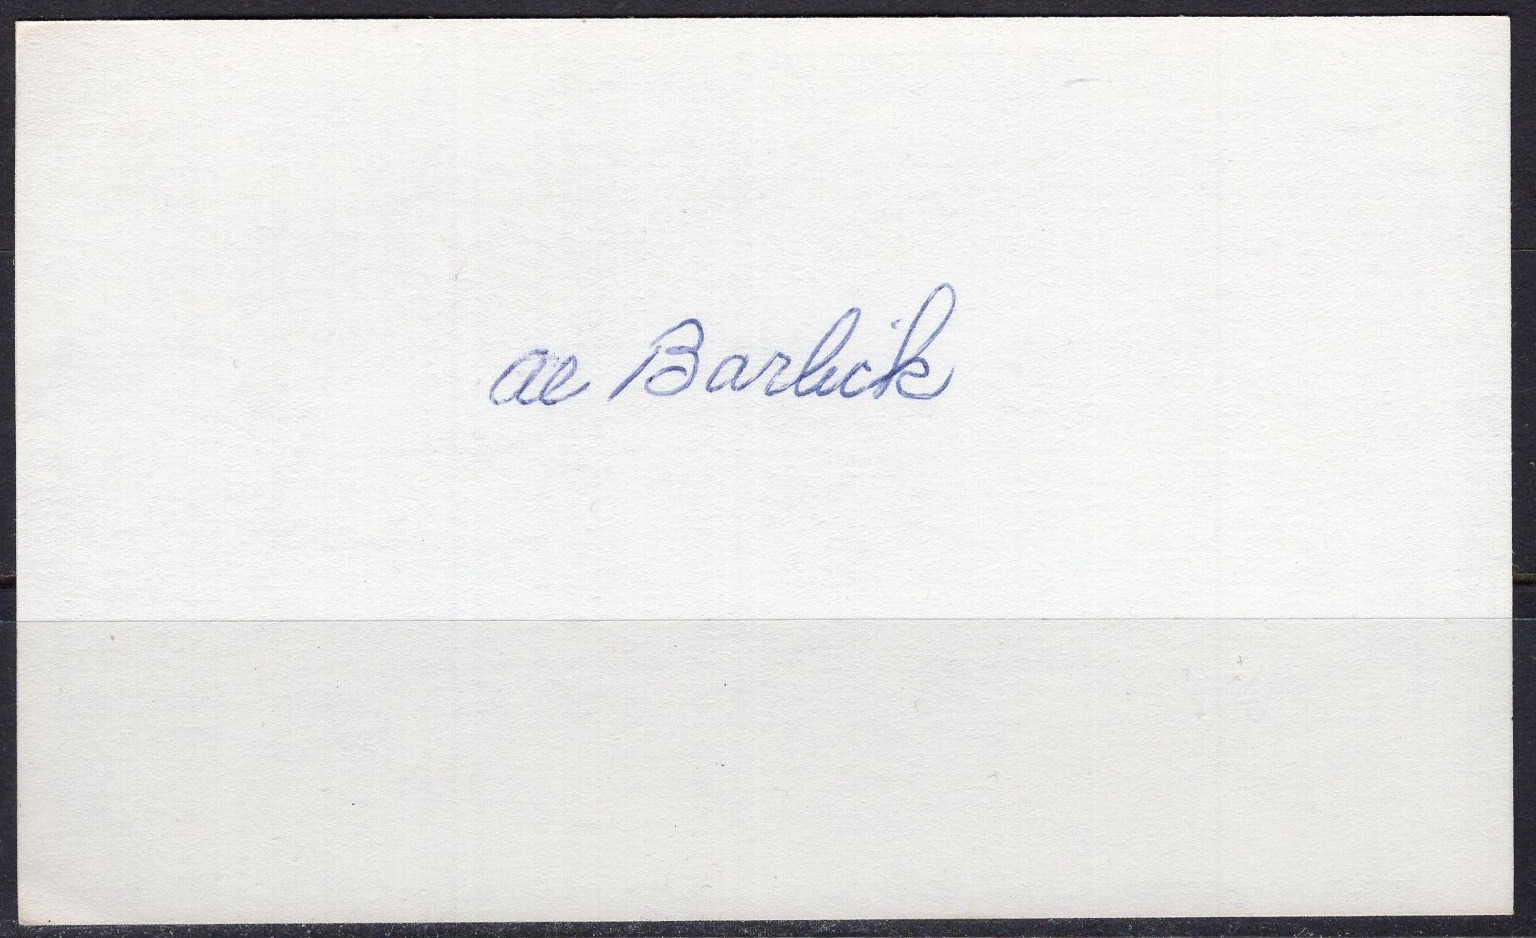 Al Barlick autograph